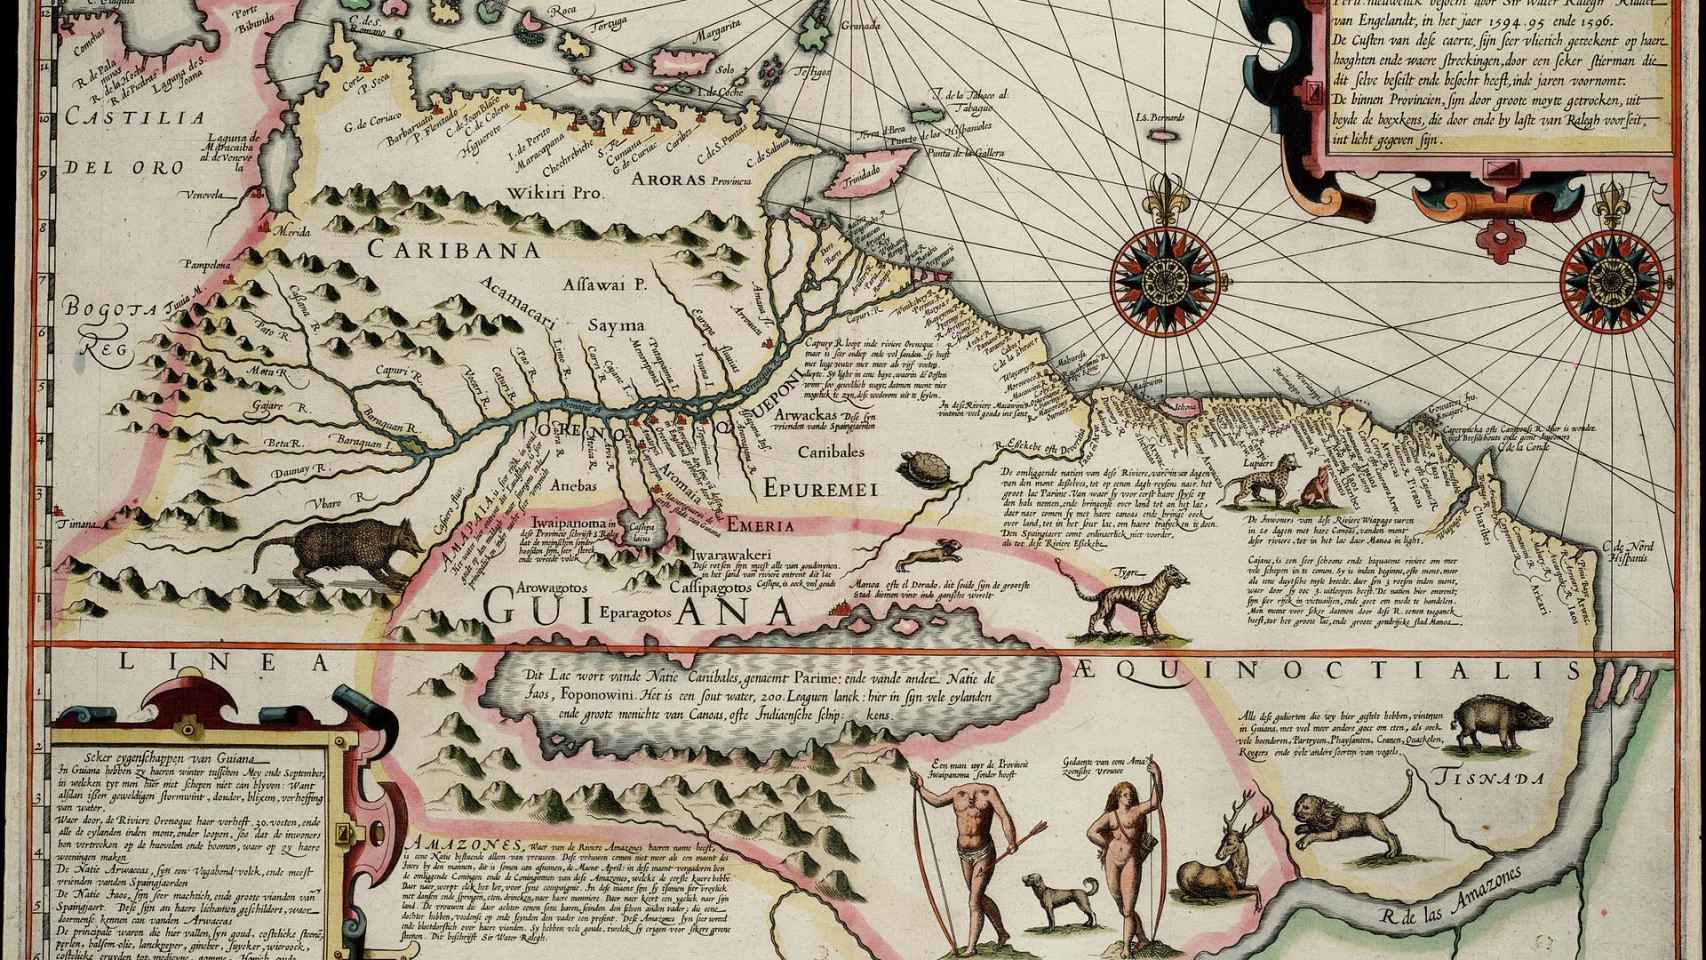 Mapa de 1599 donde se observan los lagos Casipa y Parime y la ciudad de El Dorado.